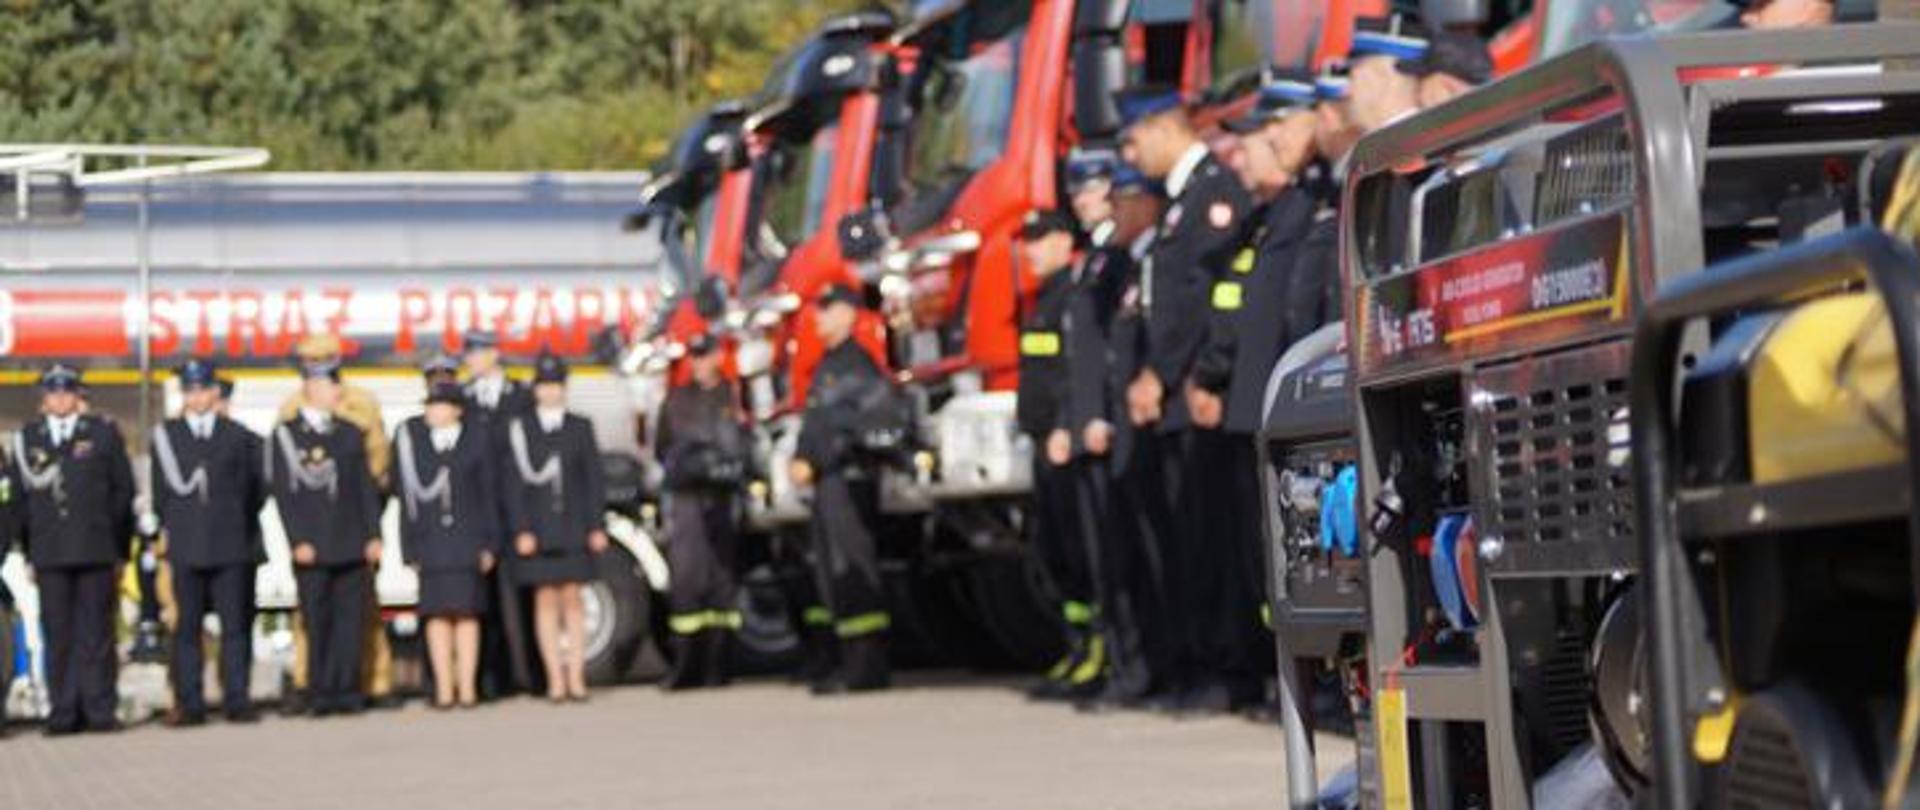 Na tle samochodów pożarniczych stoją strażacy w mundurach.